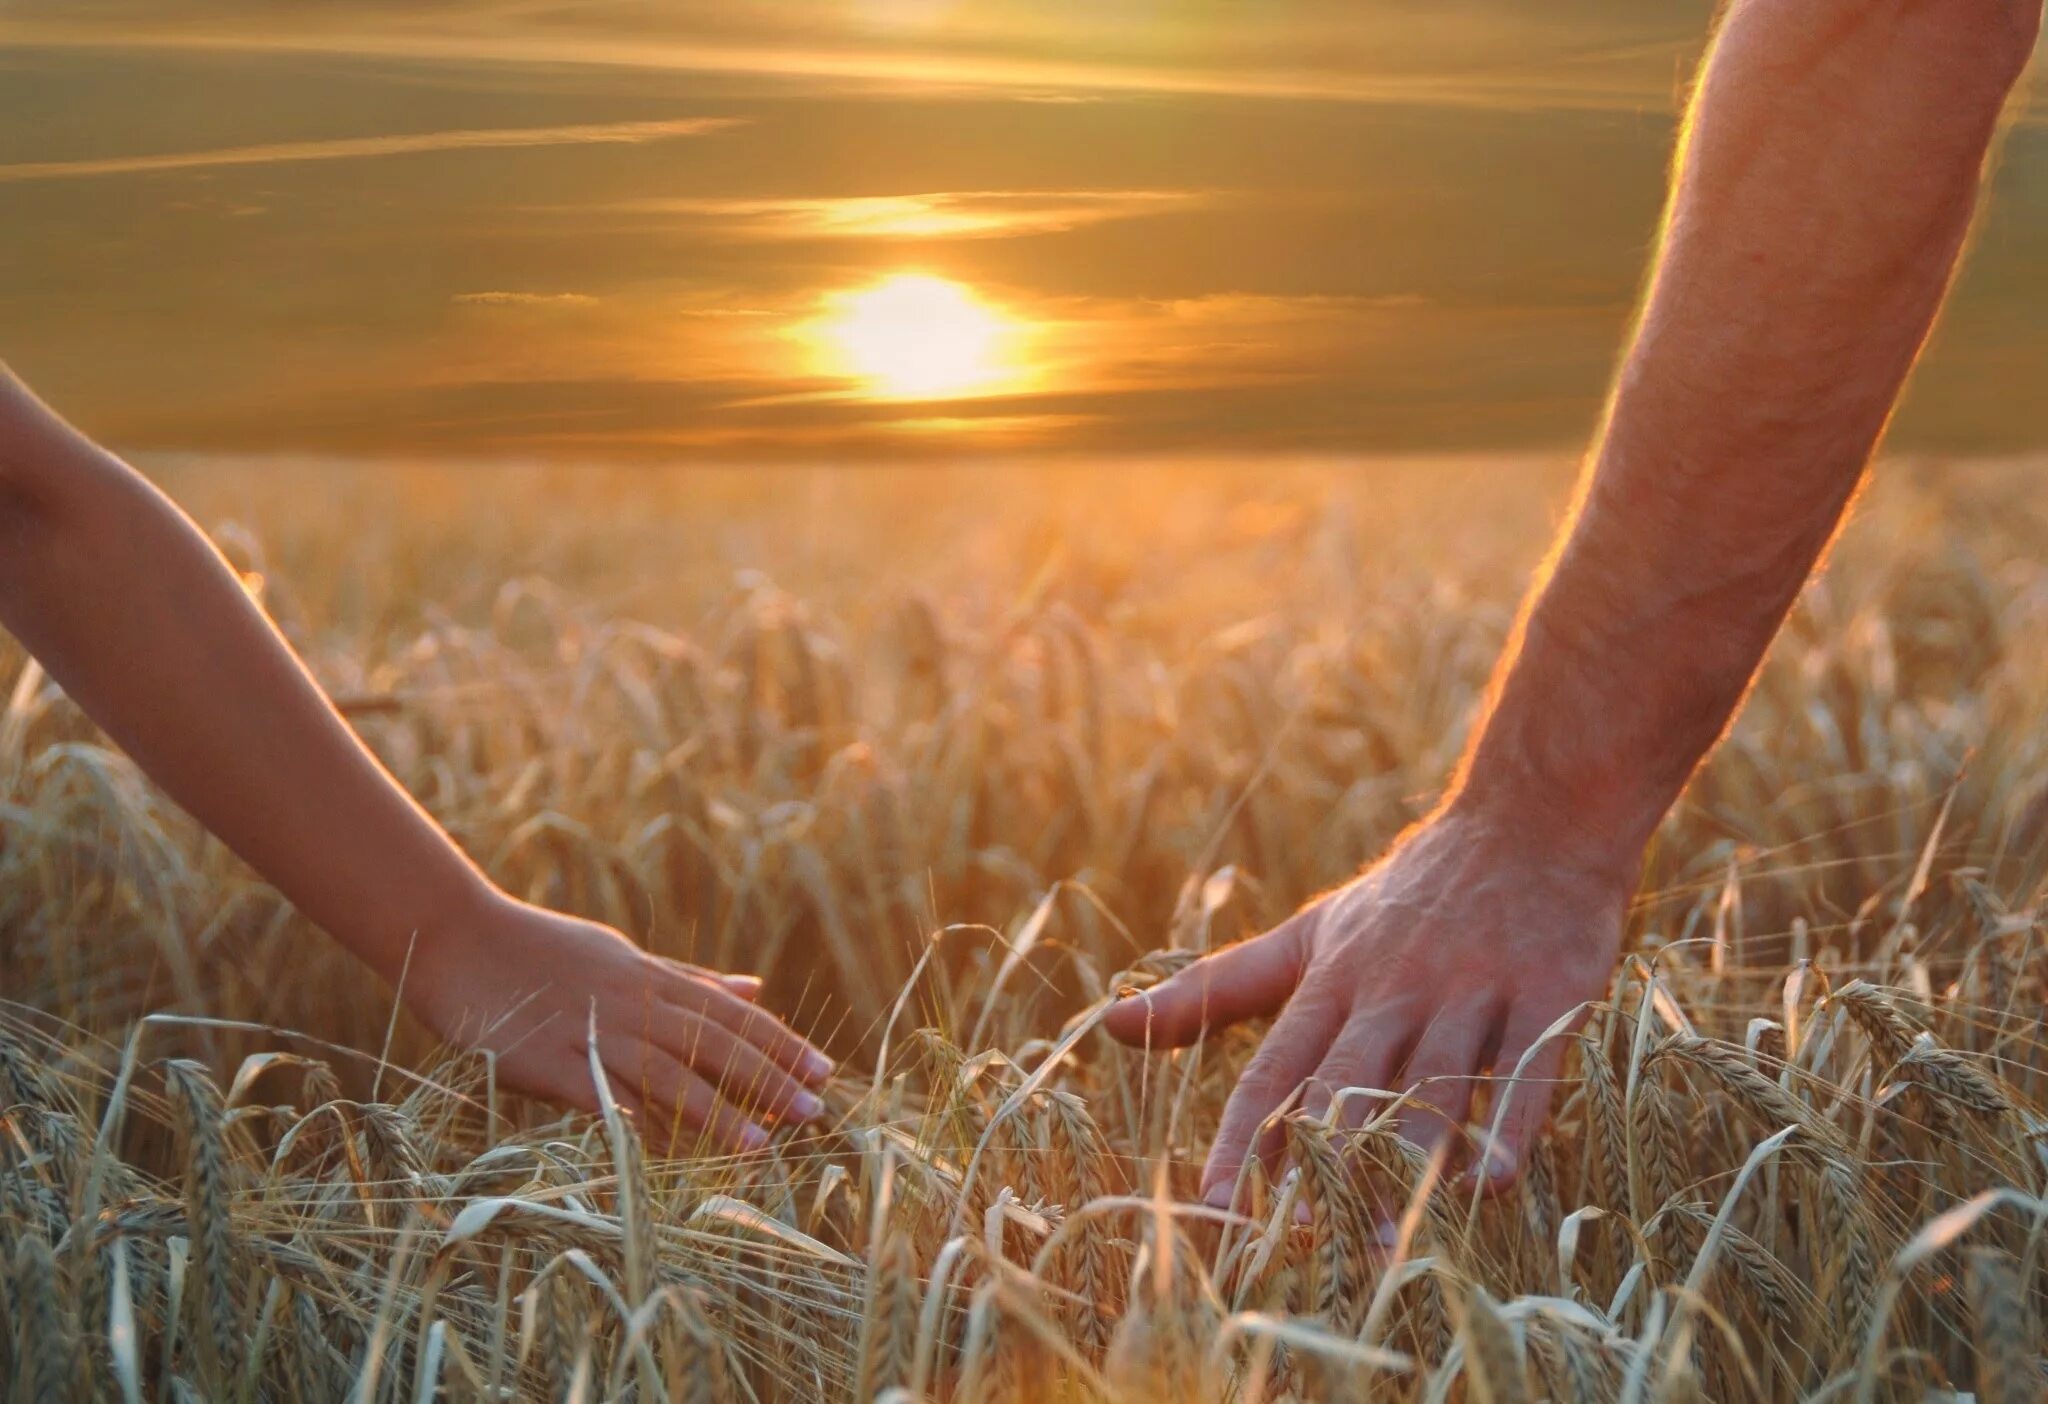 Берегите друг друга. Пшеничное поле человек. Берегите друг друга любите. Любите цените и берегите друг друга.